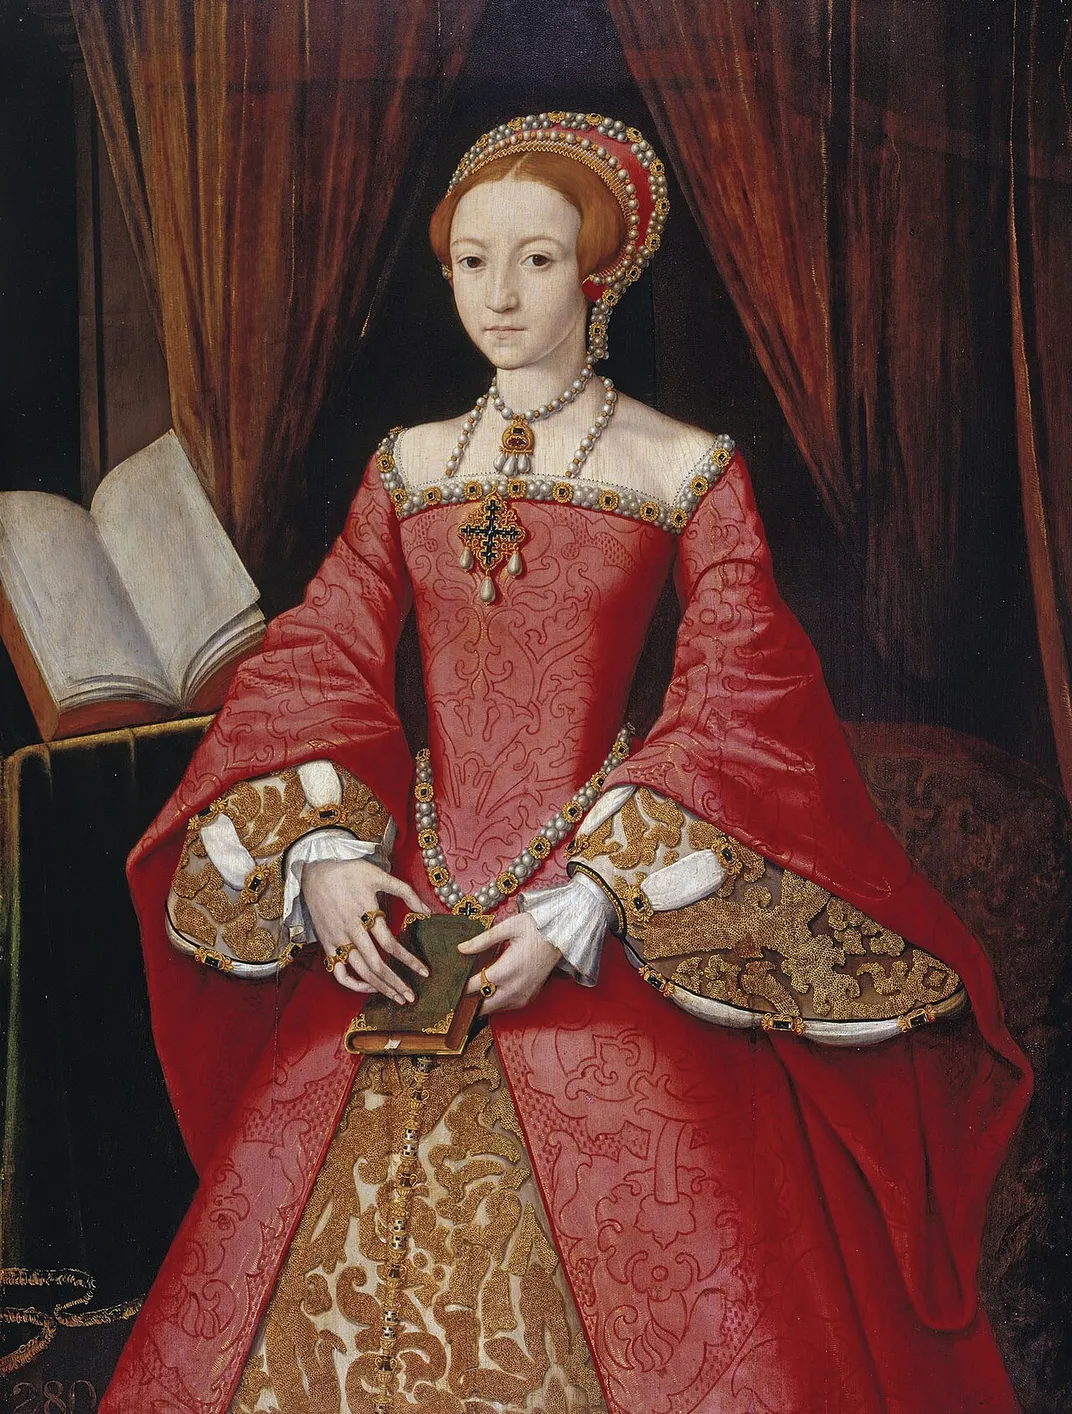 Elizabeth I as a teenager